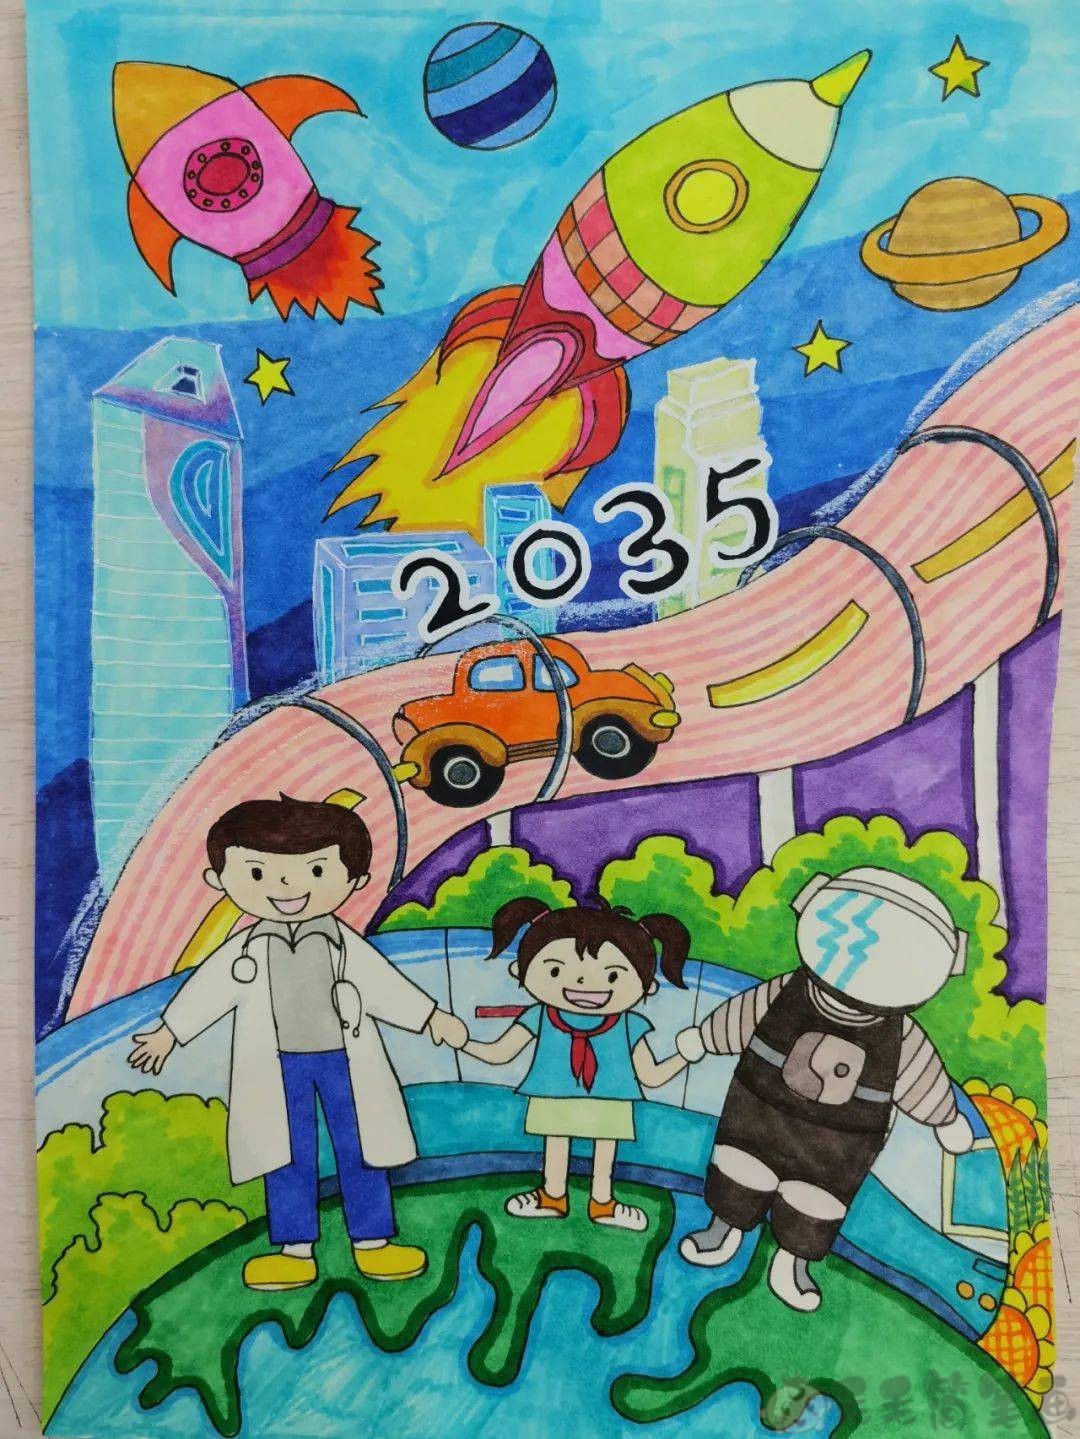 更多2035题少儿绘画作品,展望2035绘画图片,的可前往【儿童绘画